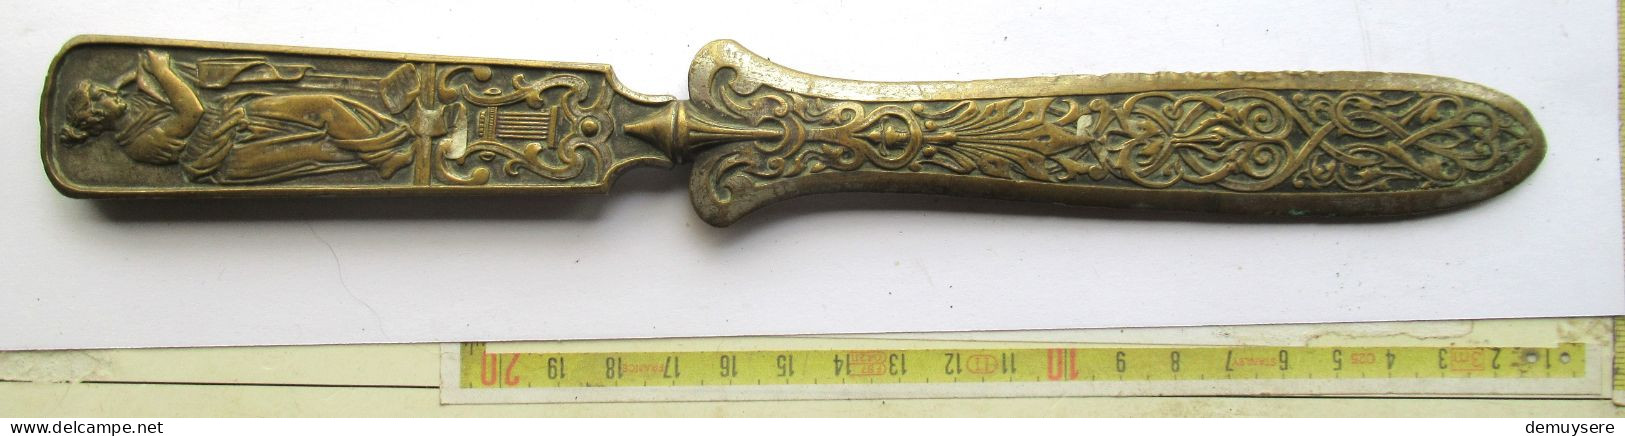 Lade 24  - Bronzen Of Koperen Brievenopener - Ouvre-lettre En Bronze Ou En Cuivre - 183 Gram - Koper